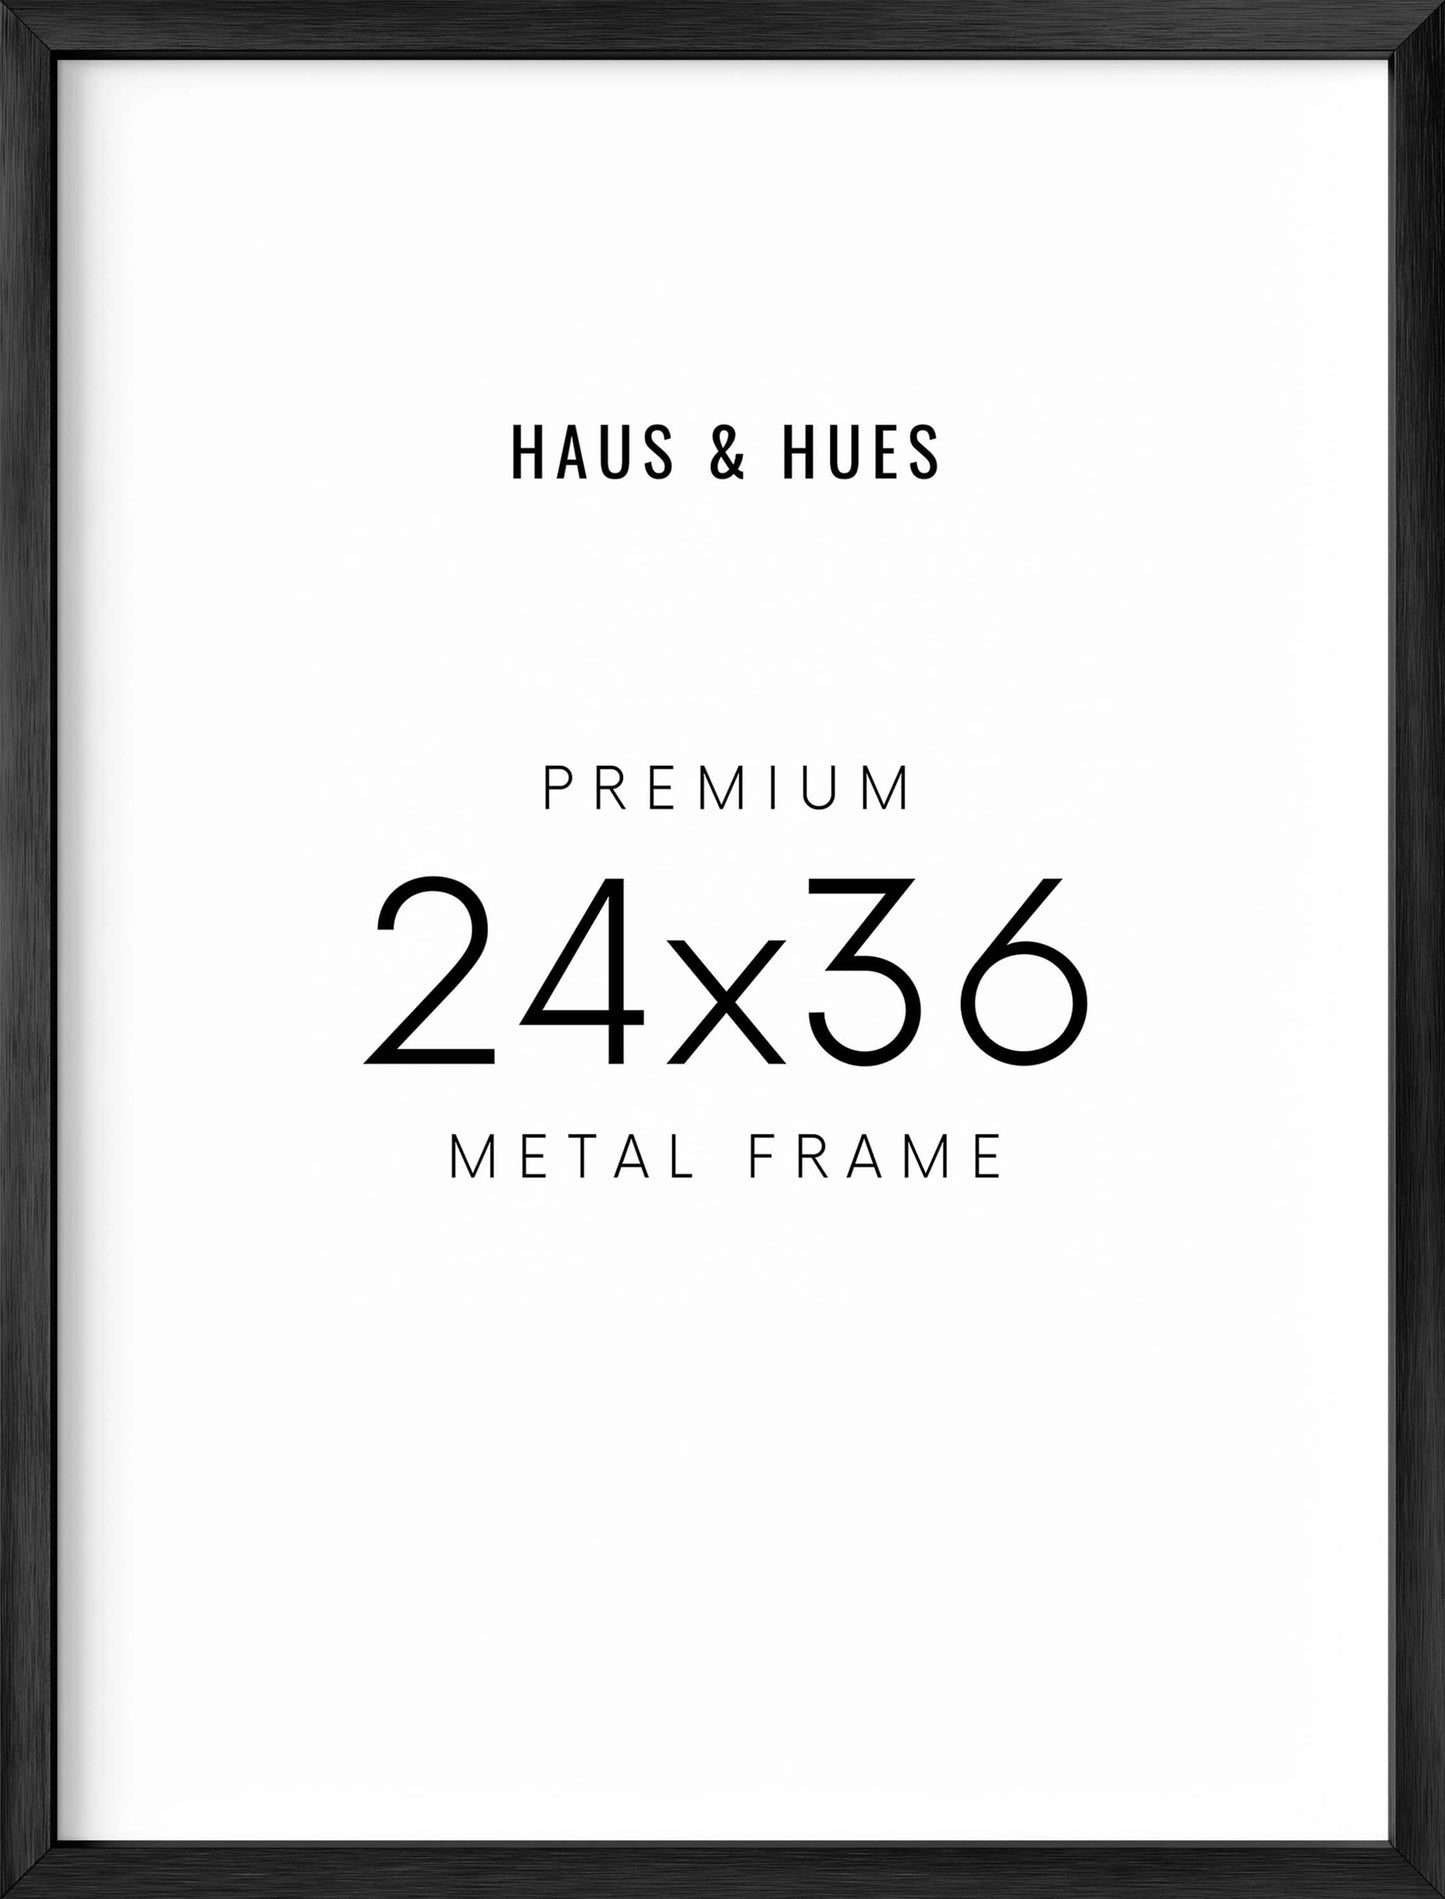 24x36 in, Individual, Black Aluminum